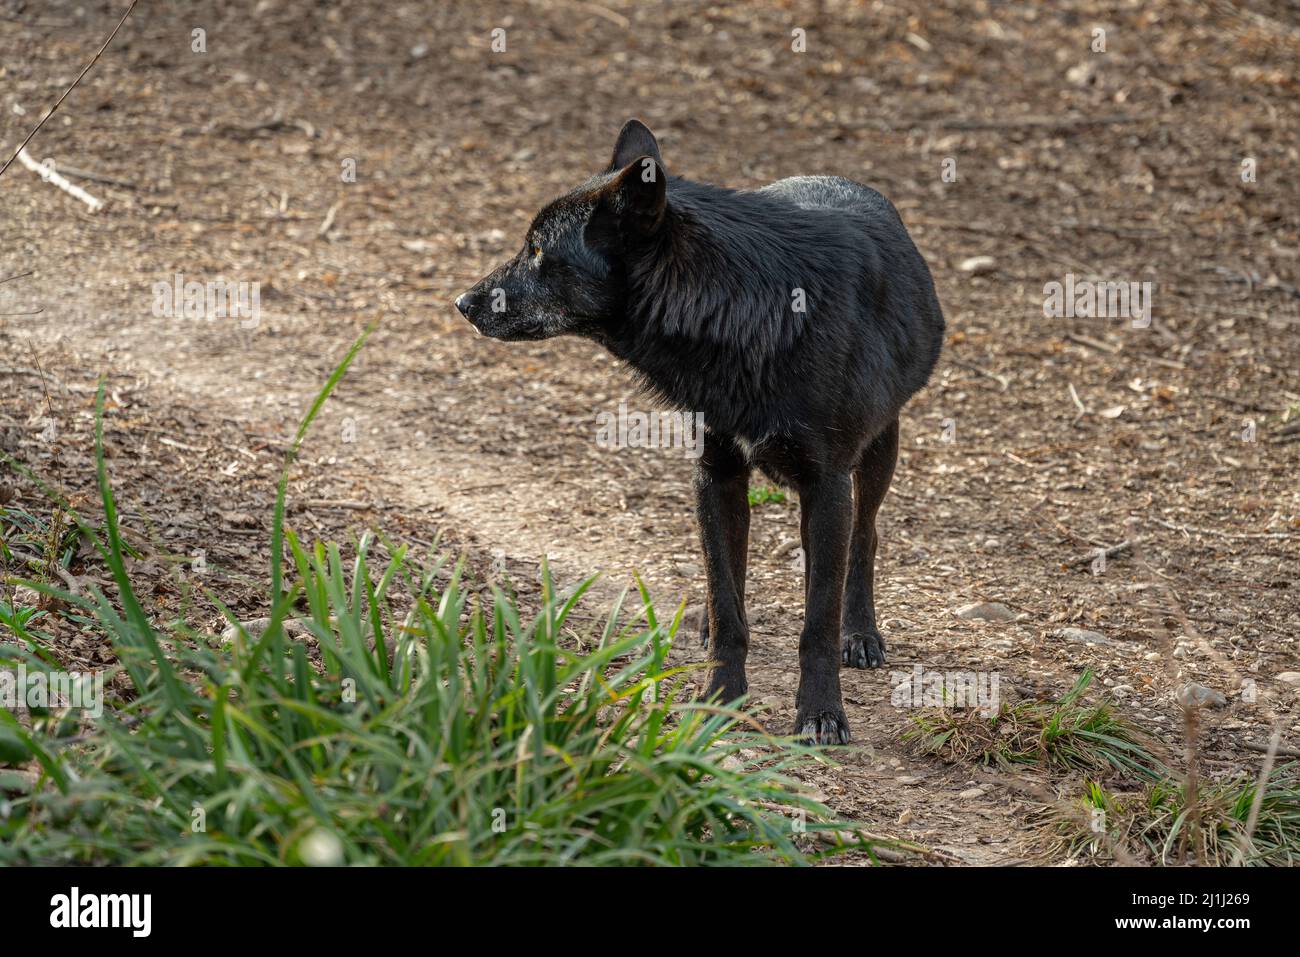 Hybride noir du loup Apennine dans la réserve naturelle de la réserve régionale du lac Penne. Oasis WWF, Penne, province de Pescara, Abruzzes, Italie, Europe Banque D'Images